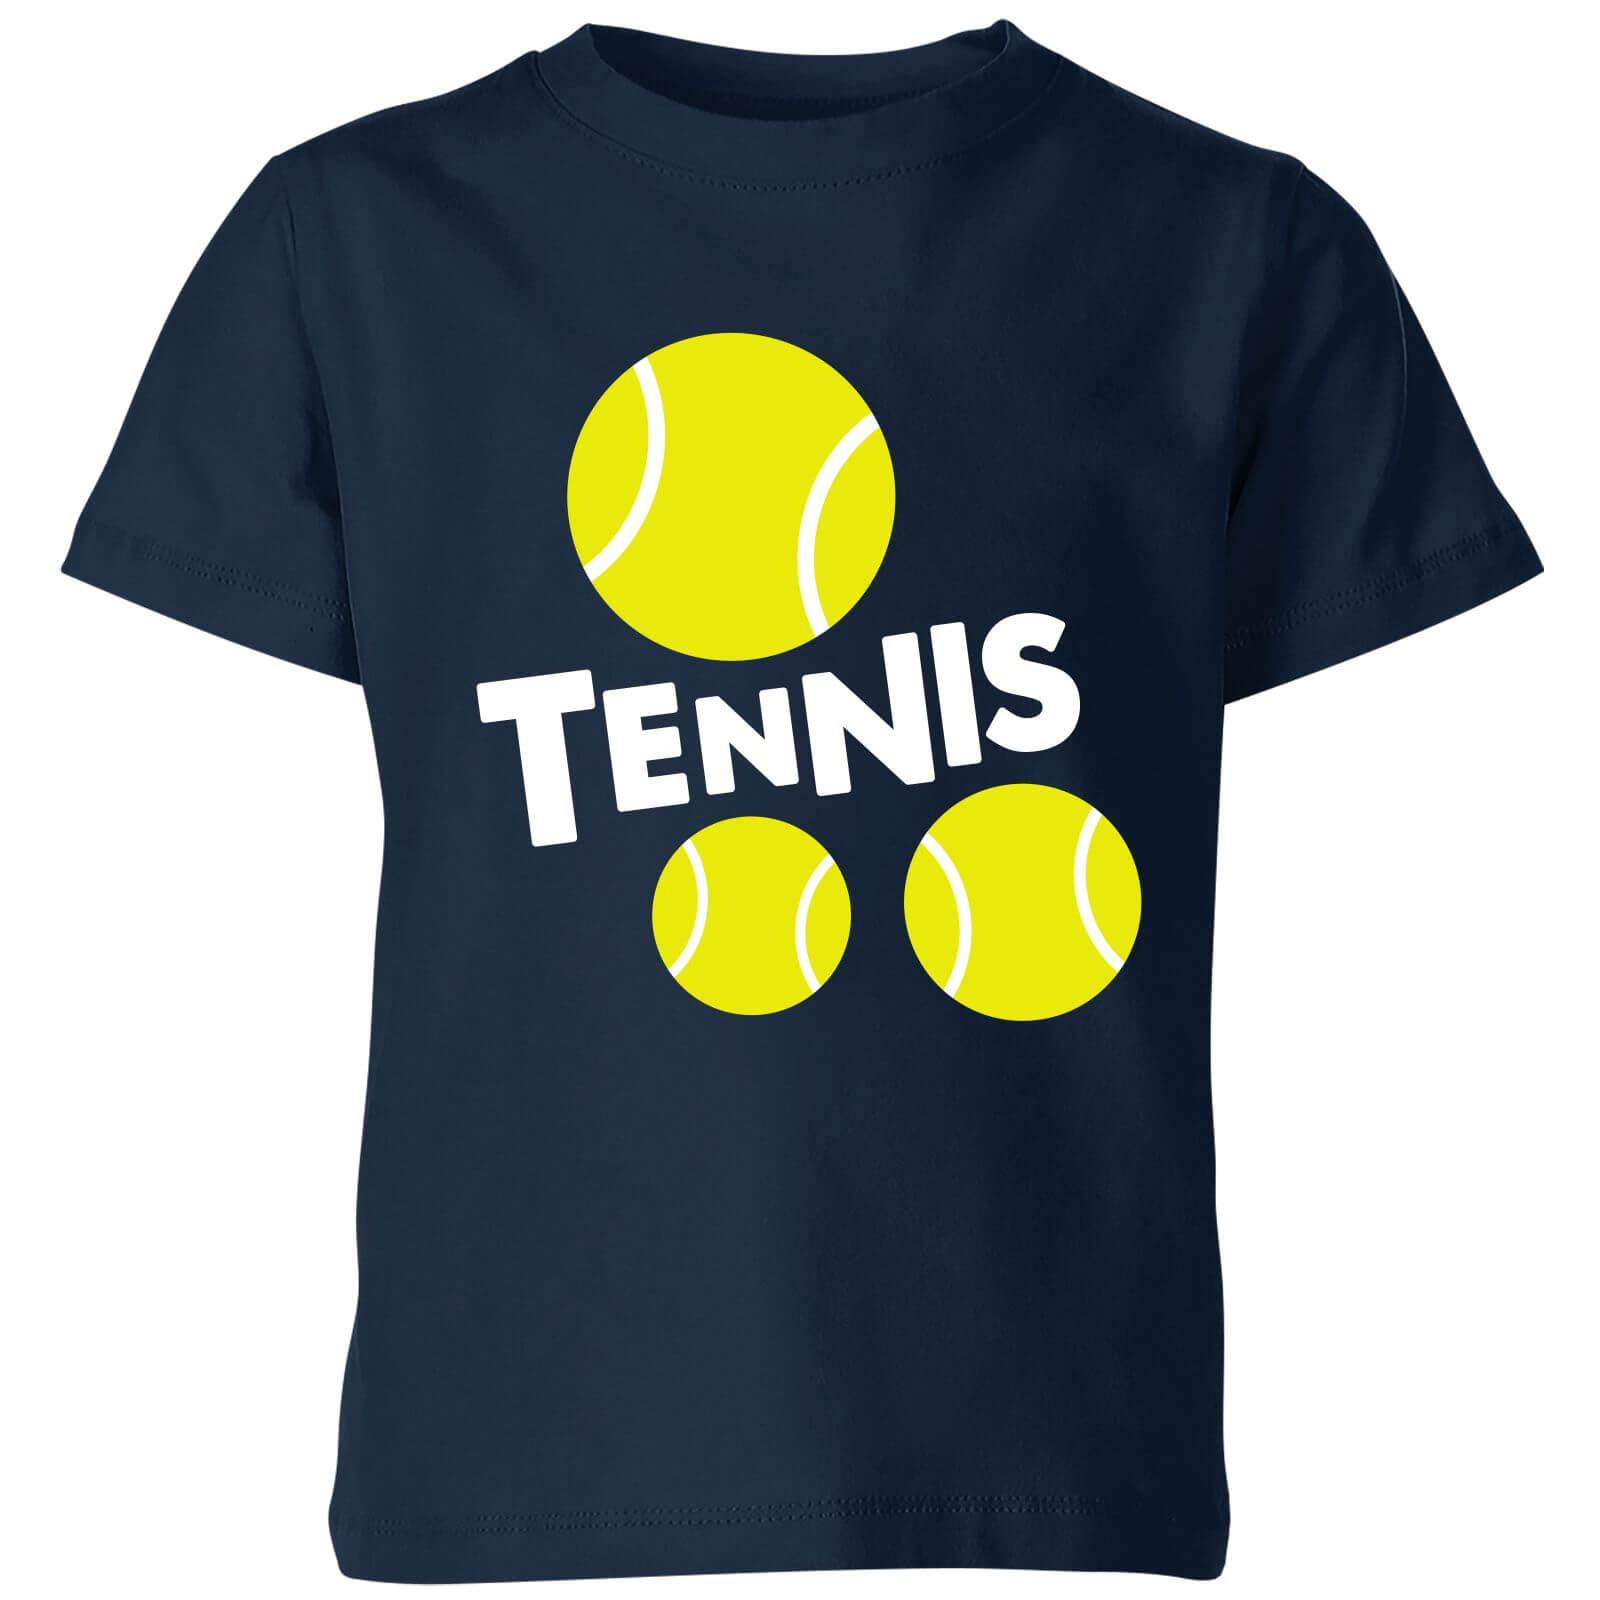 Tennis Balls Kids T-Shirt - Navy - 11-12 Years - Navy